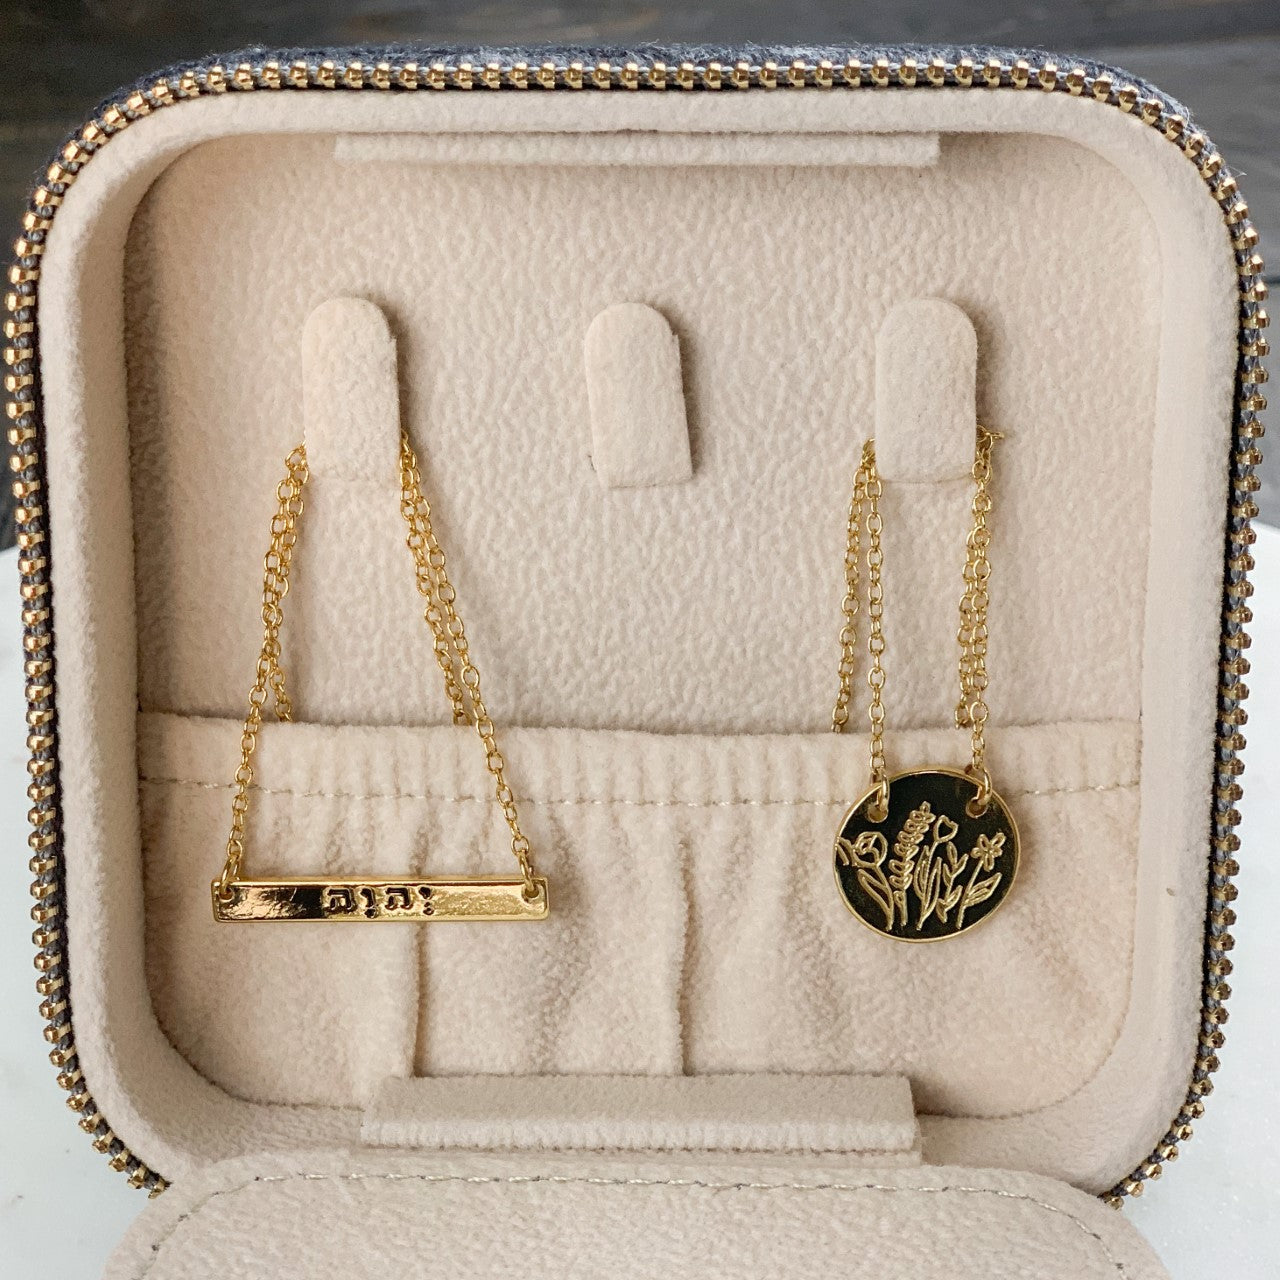 Designer Jewelry Cases